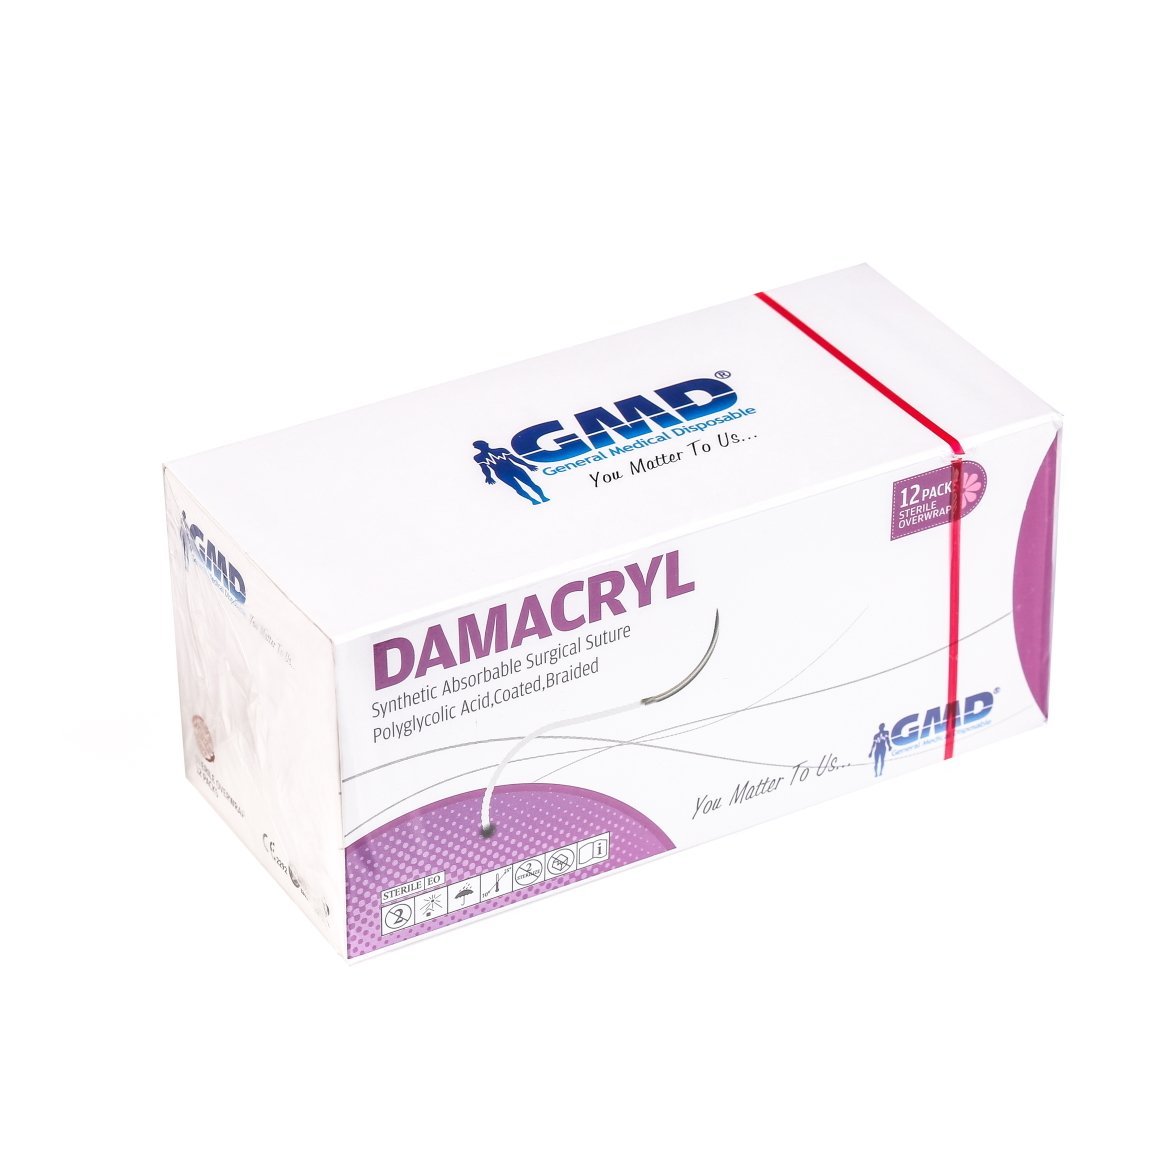 Damacryl Emilebilir Cerrahi Sütür - PGA İplik - USP:4-0-75cm - 1/2 Daire 16 mm - Yuvarlak İğne